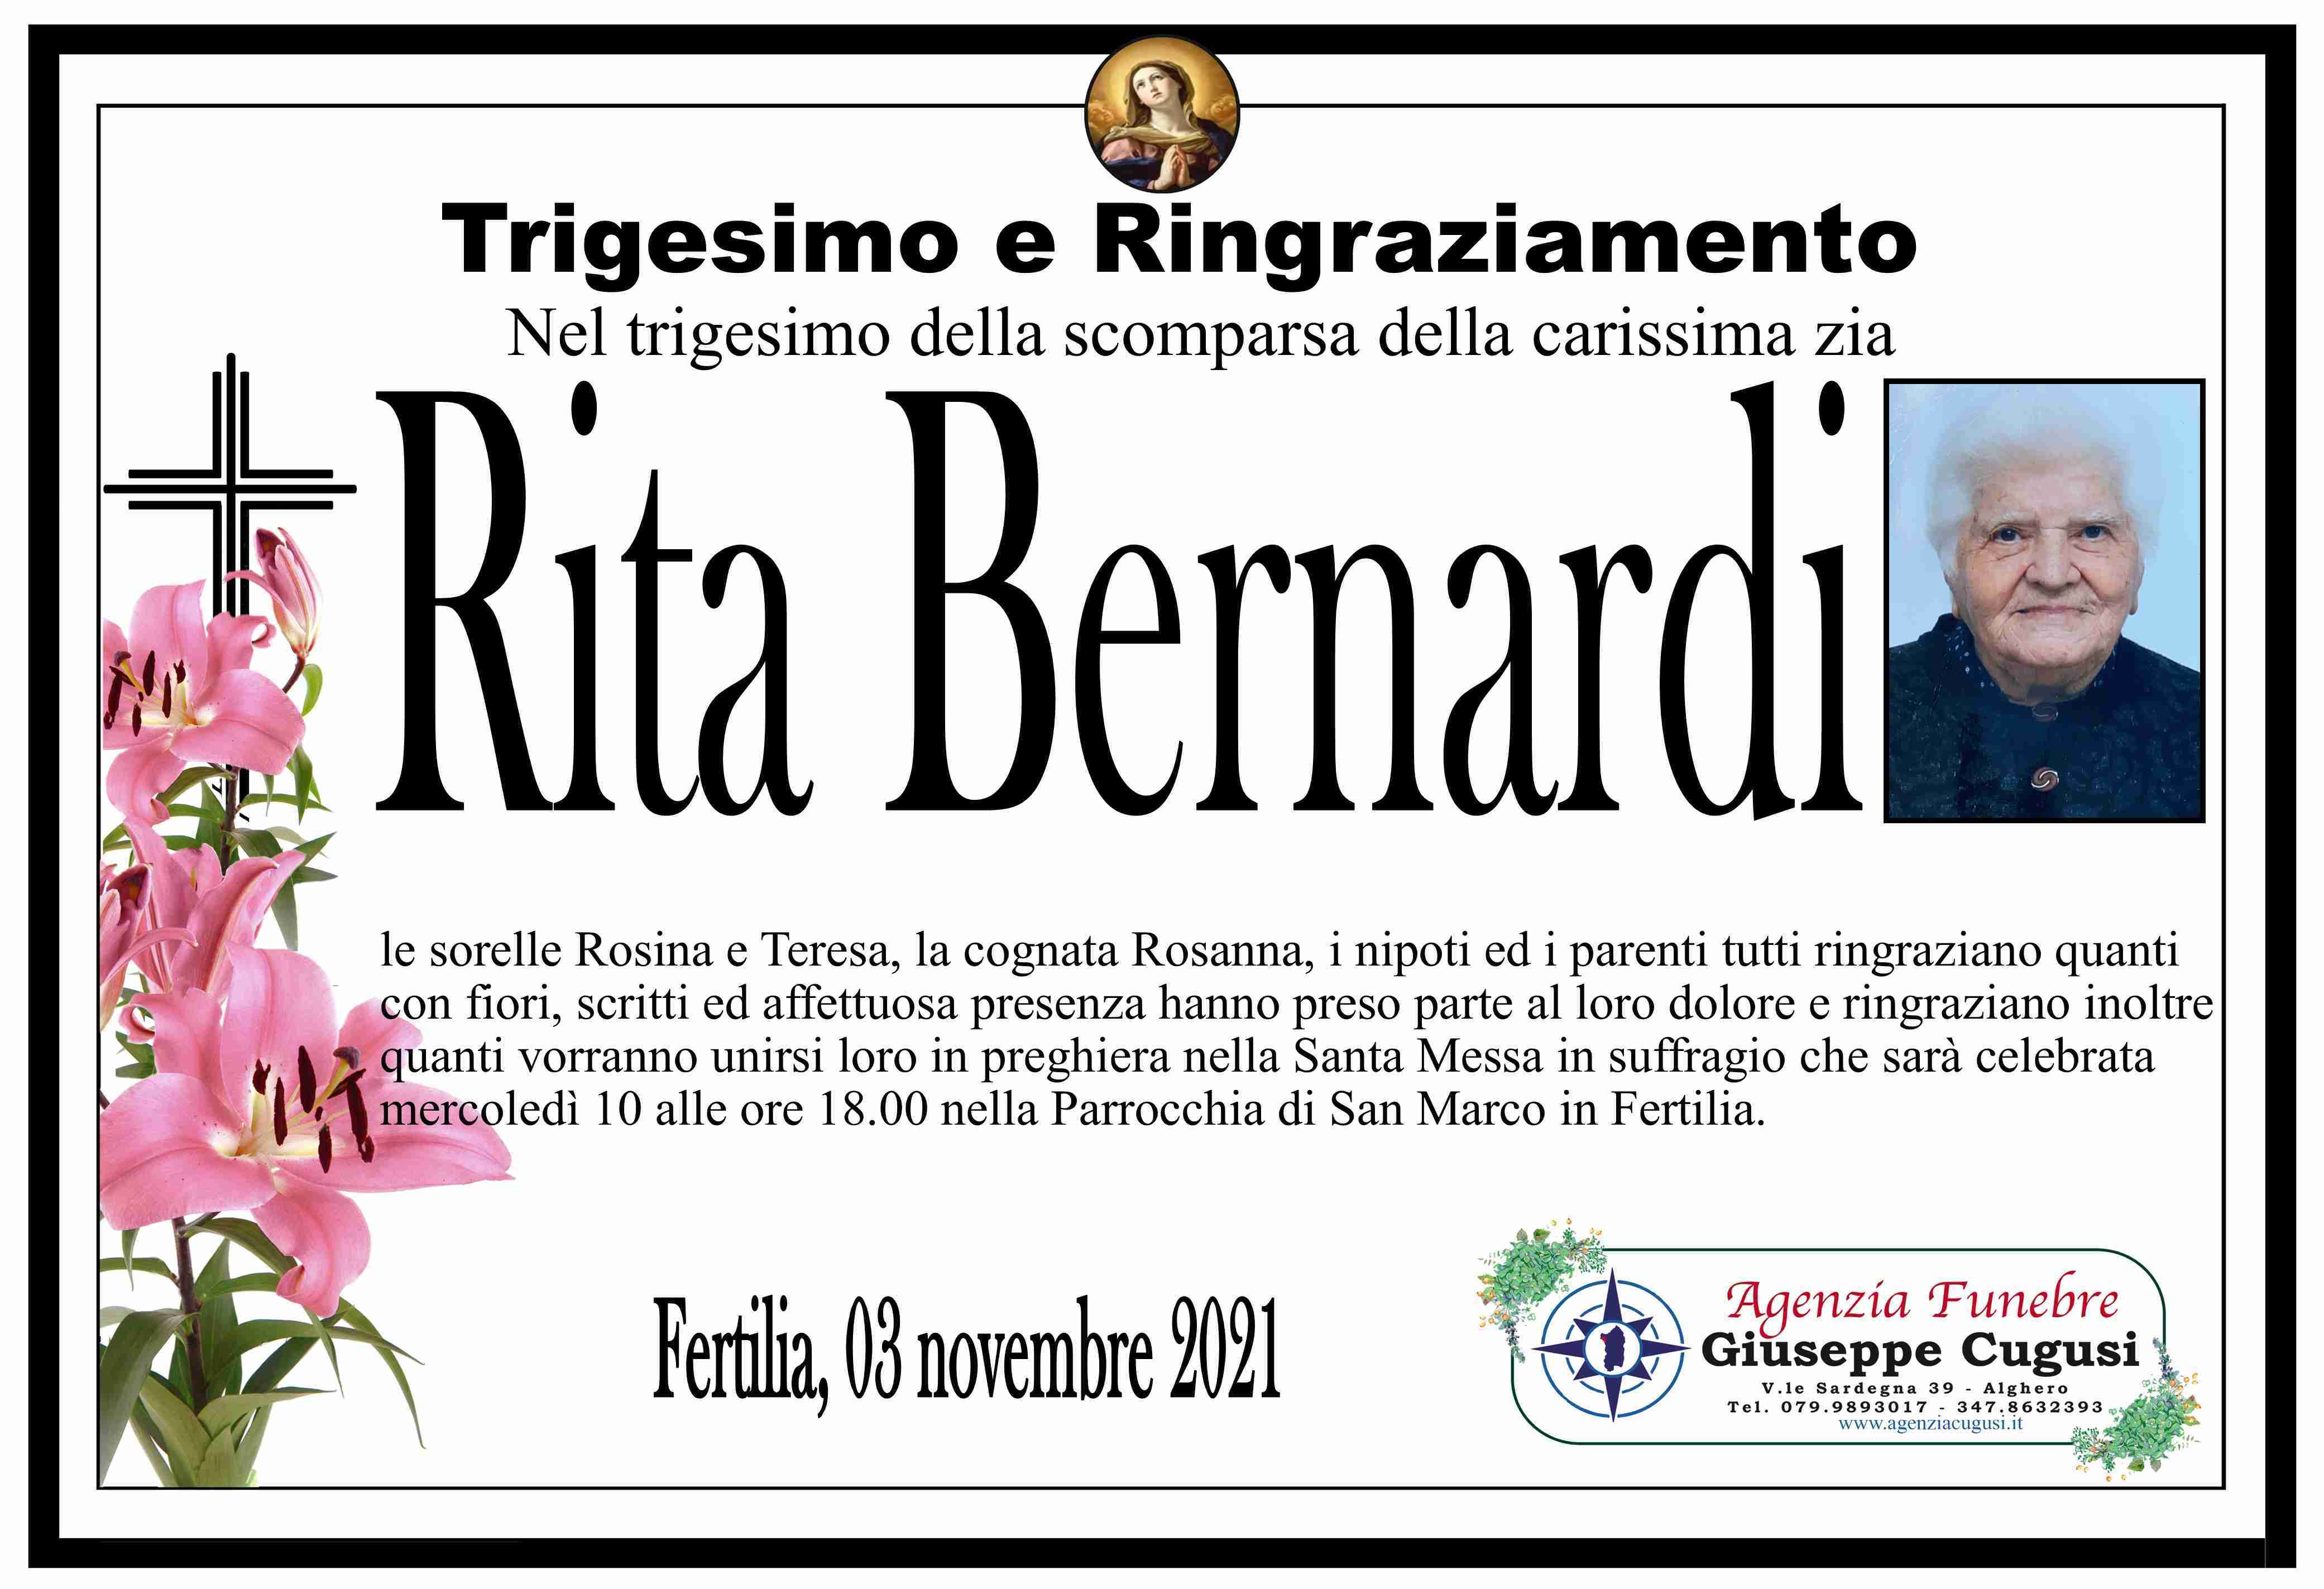 Rita Bernardi